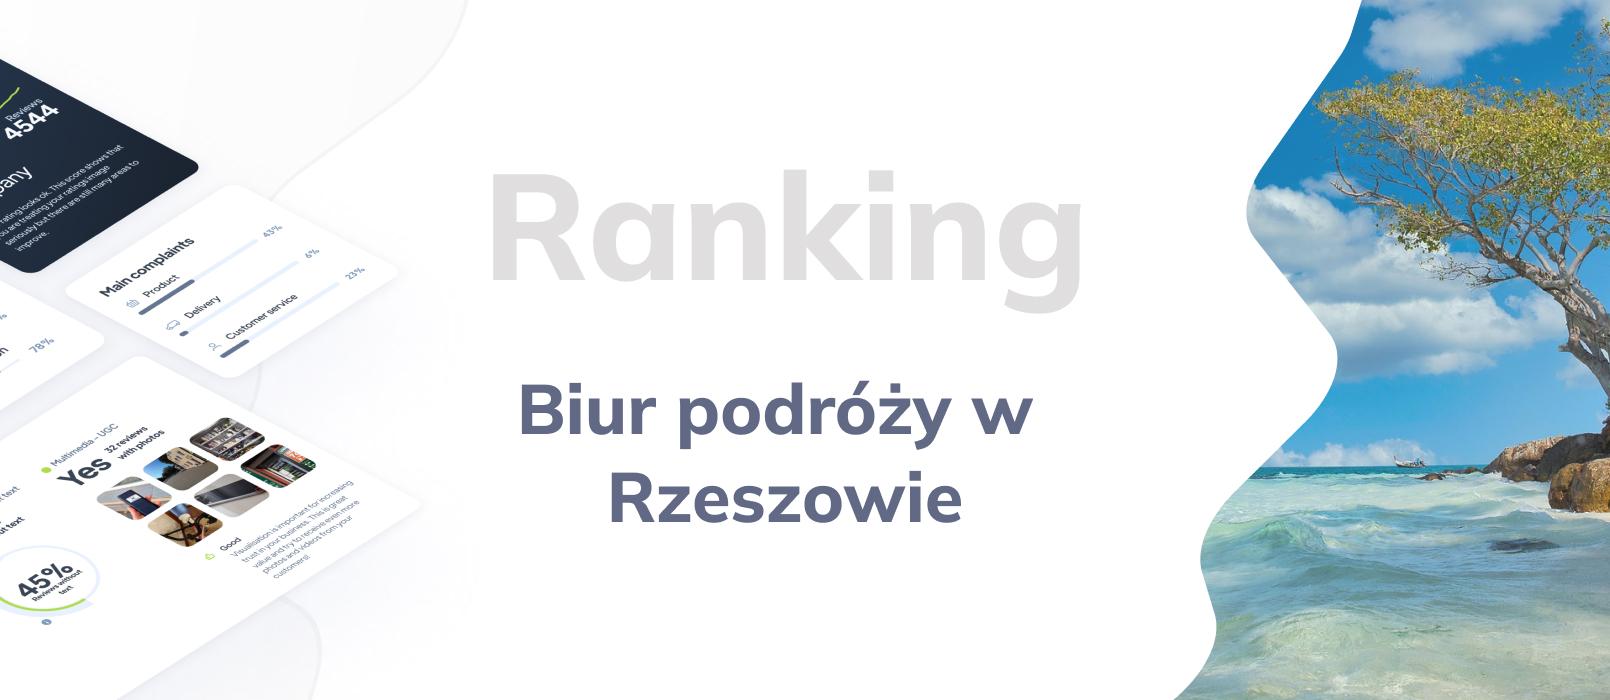 Biura podróży w Rzeszowie - ranking TOP 10